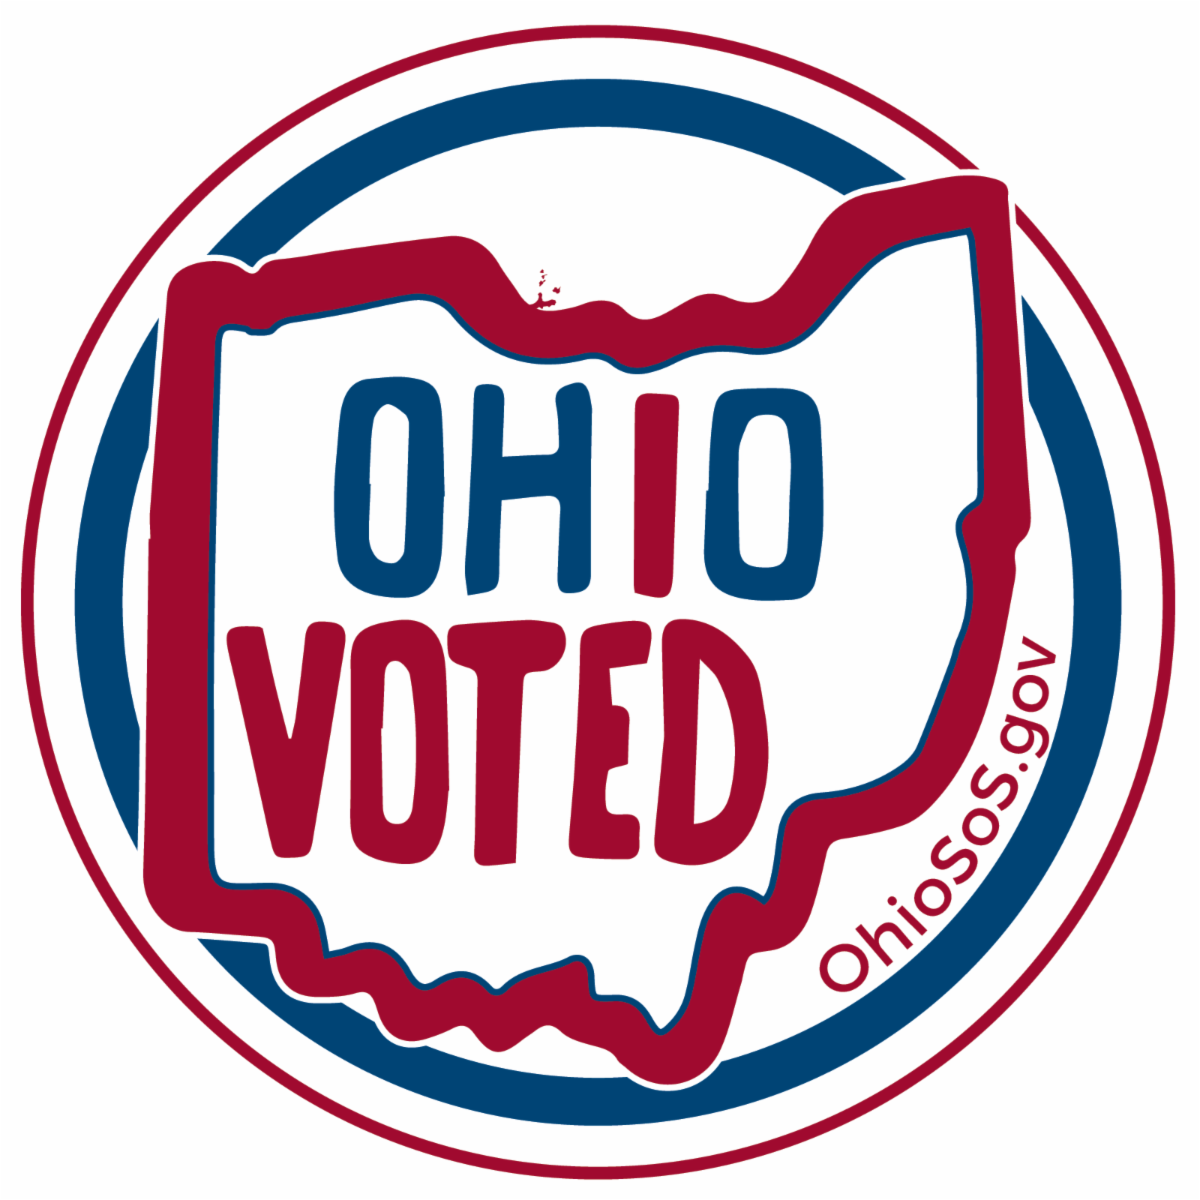 Ohio Votes